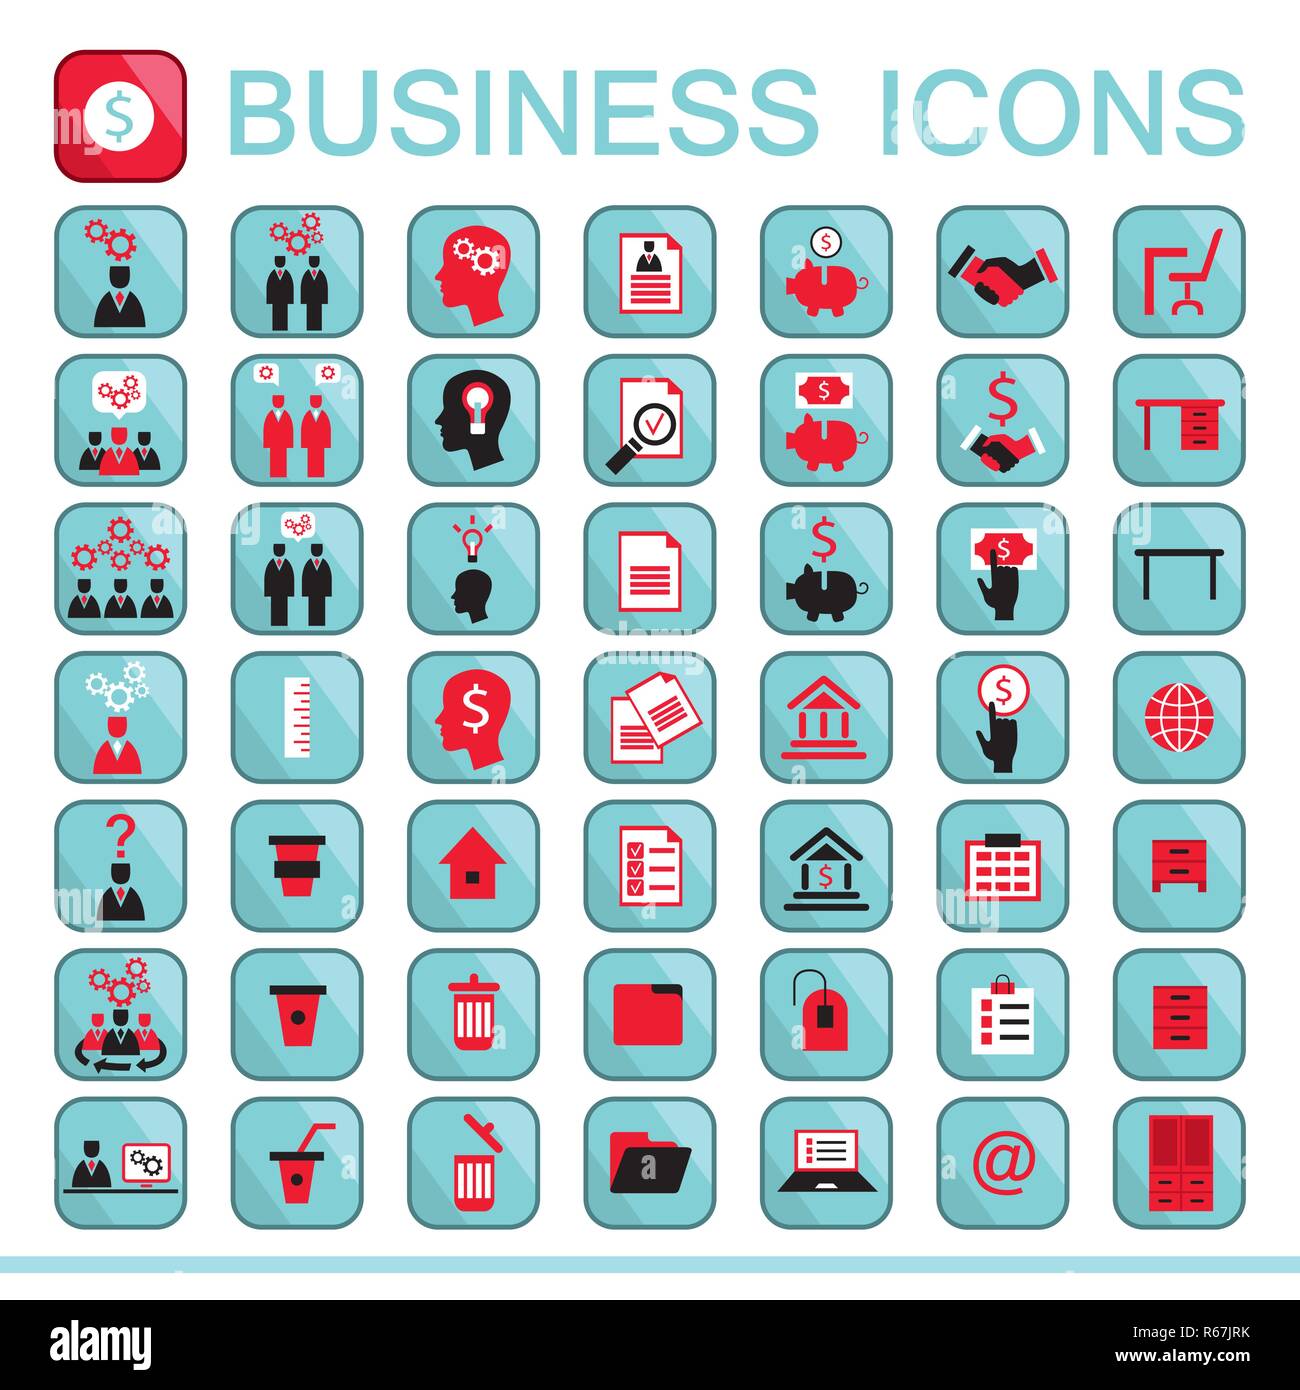 Satz von Web Icons für Business Finance Office Communication human resources Vector Illustration Stock Vektor